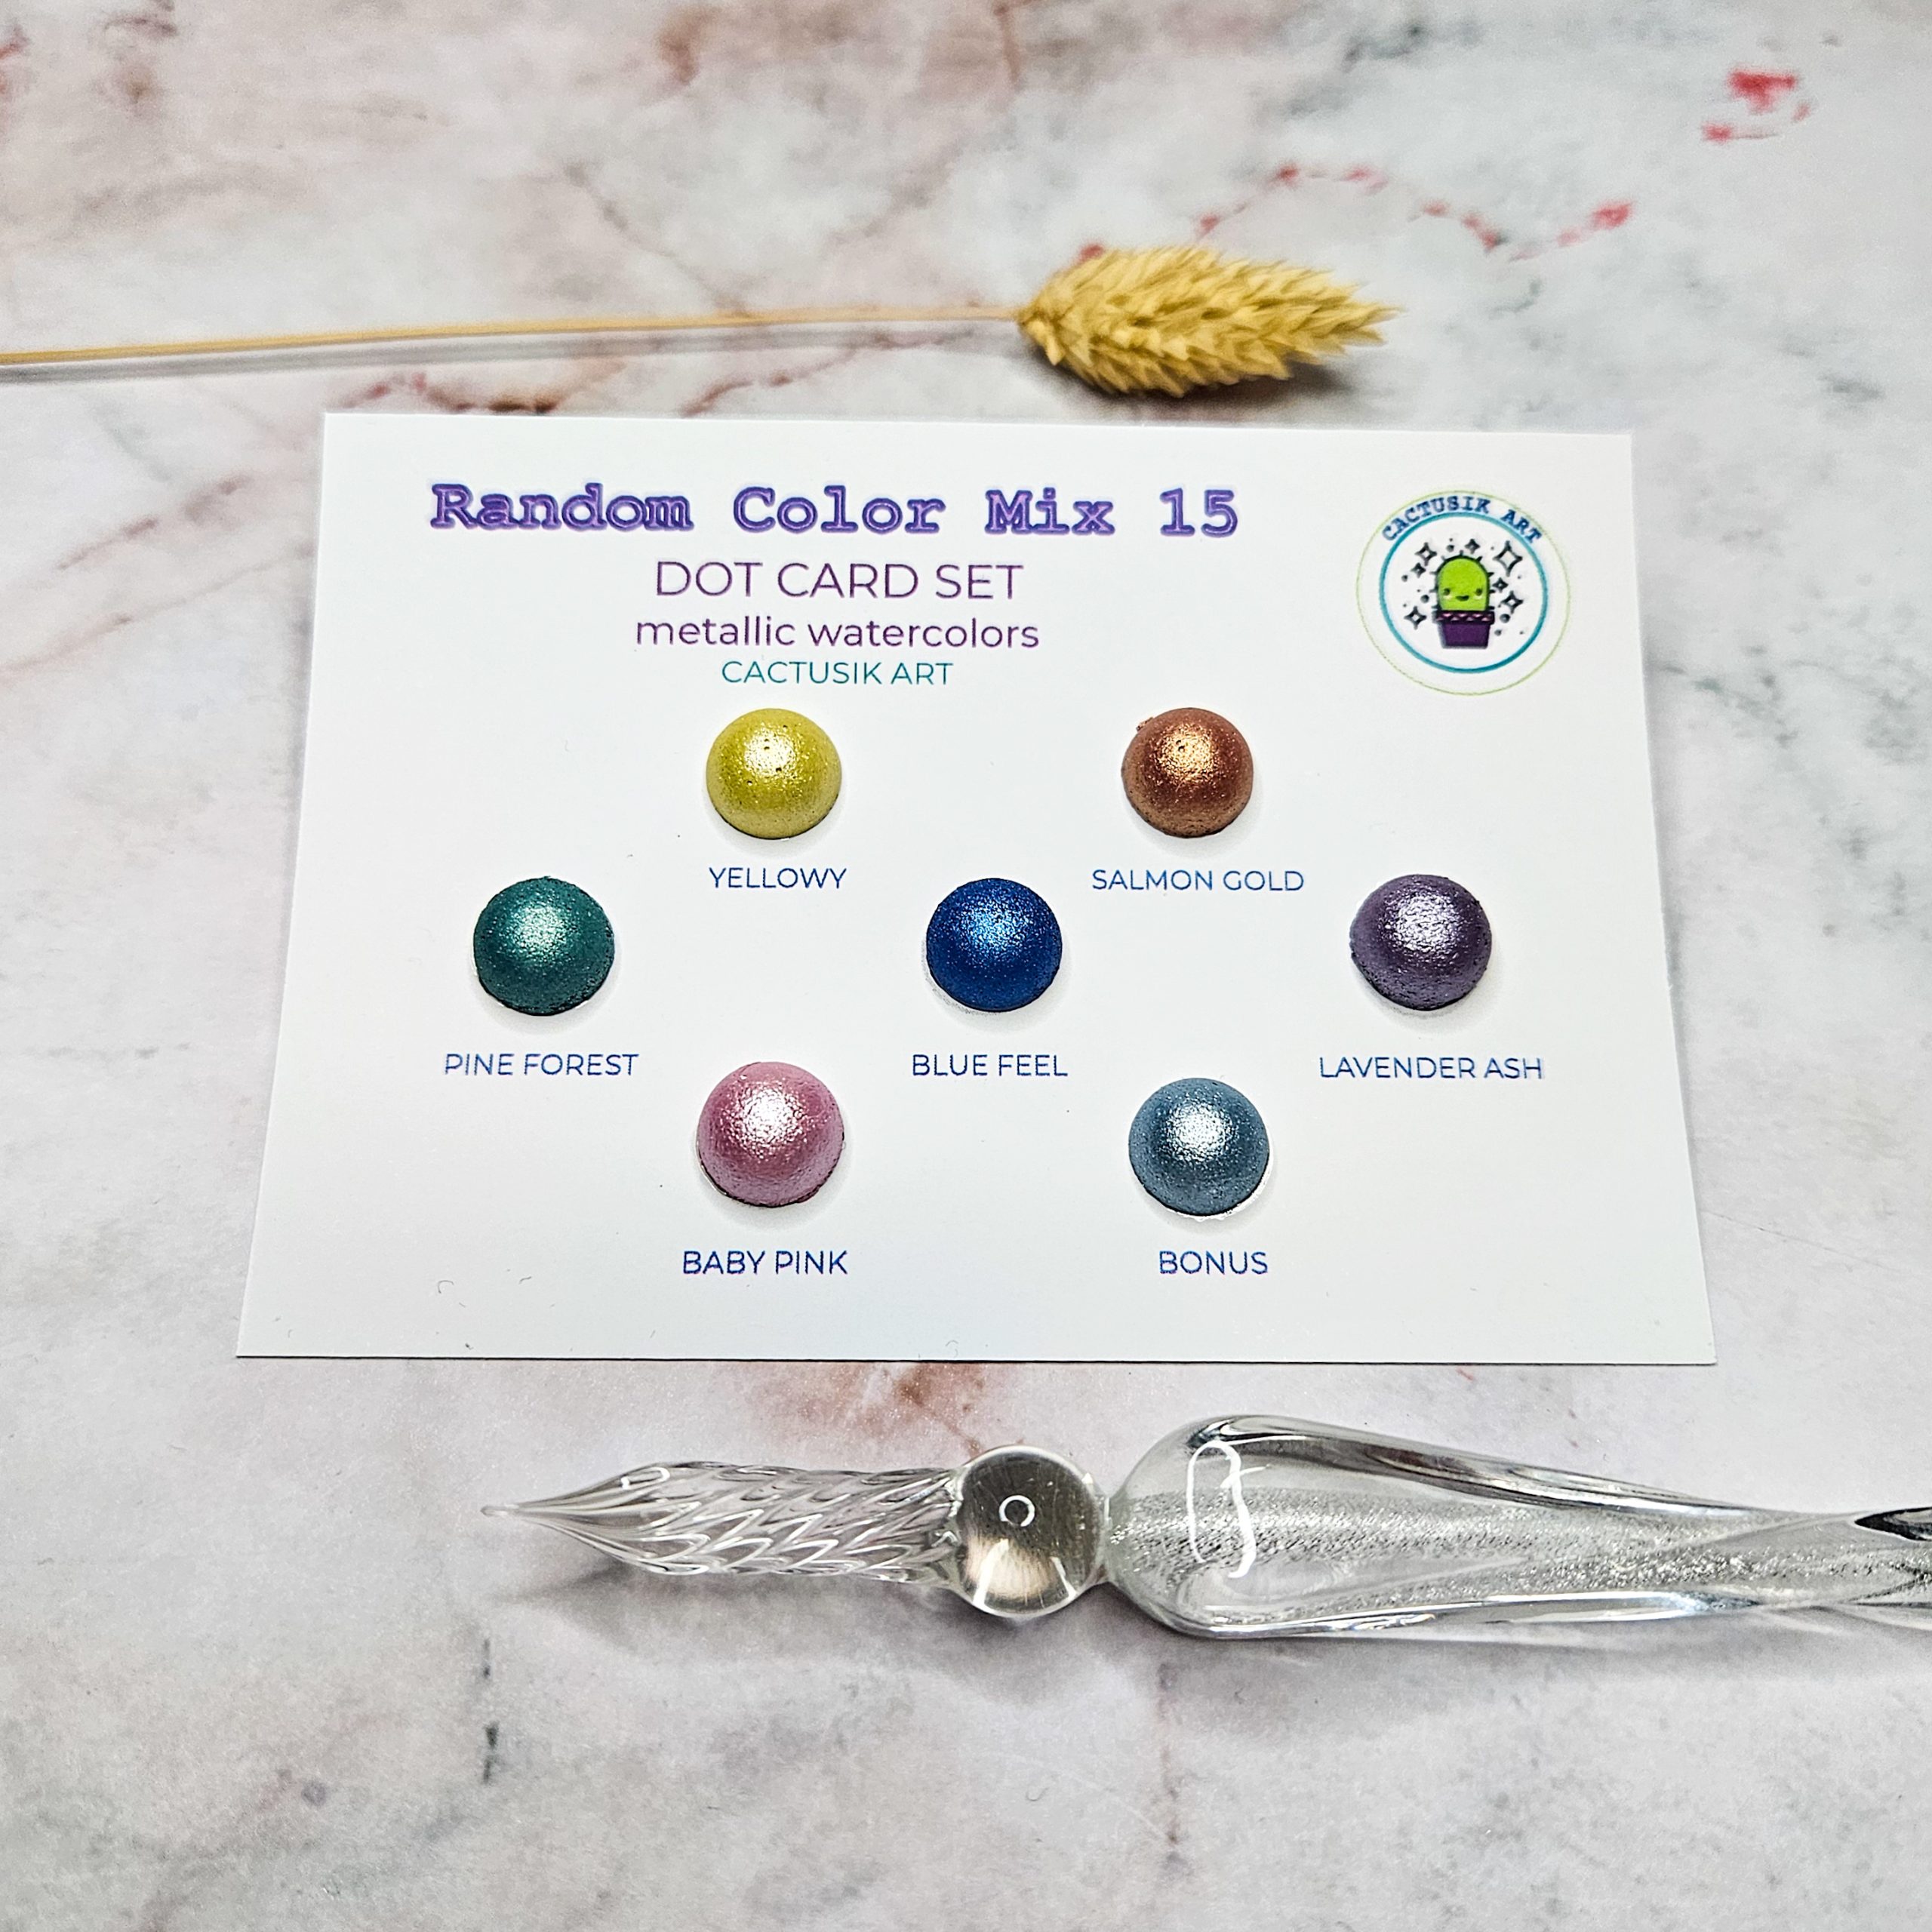 Random Color Mix 15 – Dot Card Set